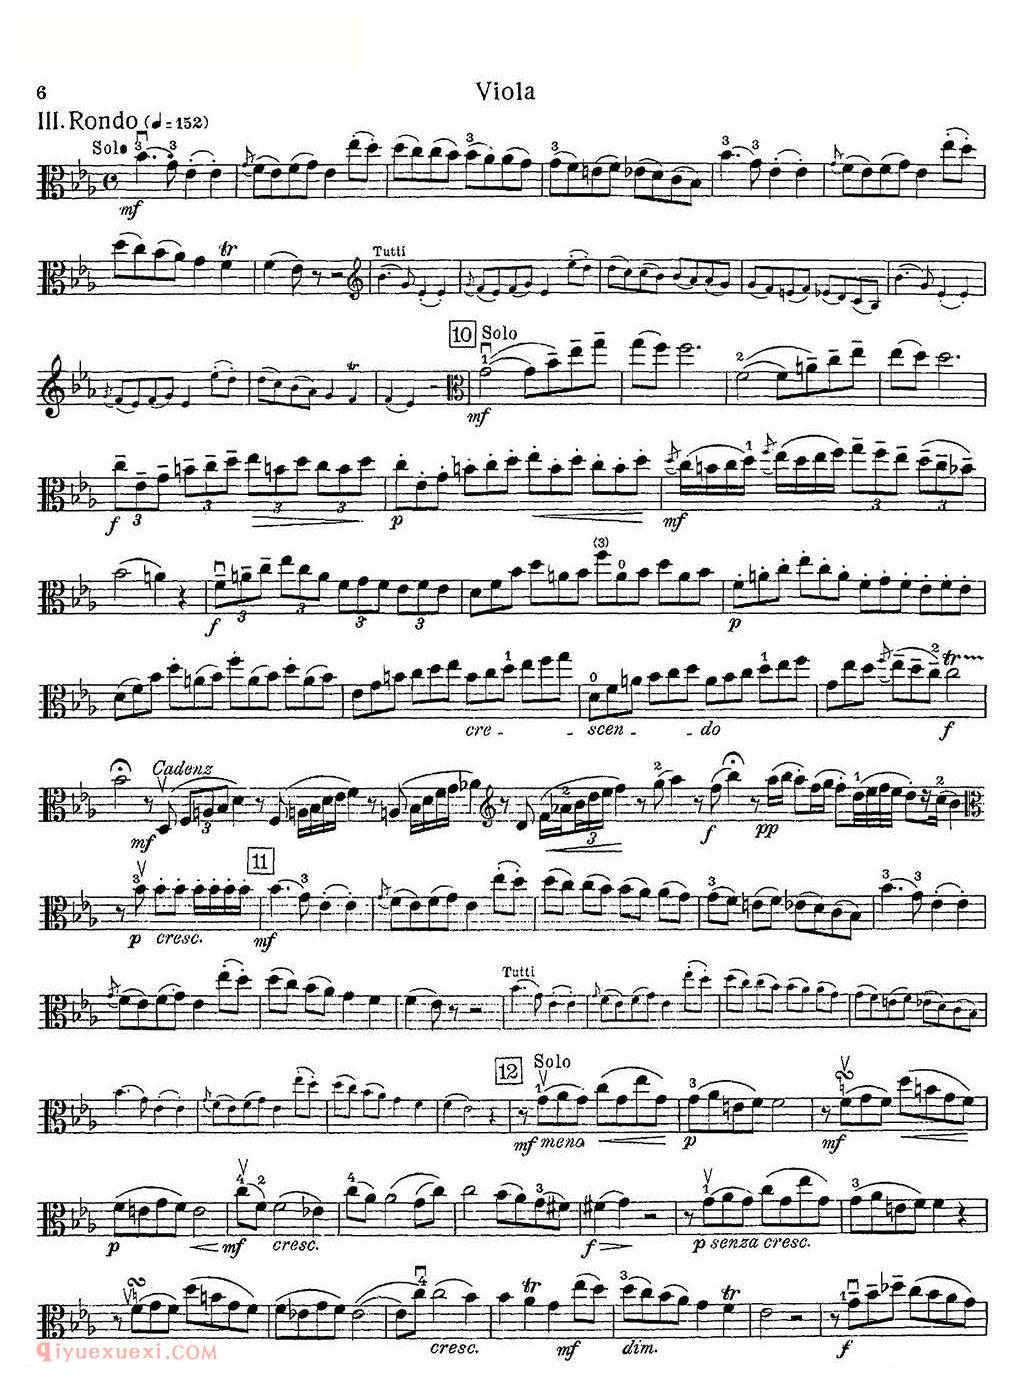 泽尔特中提琴协奏曲分谱/F. Zelter - Viola Concerto in E-flat major